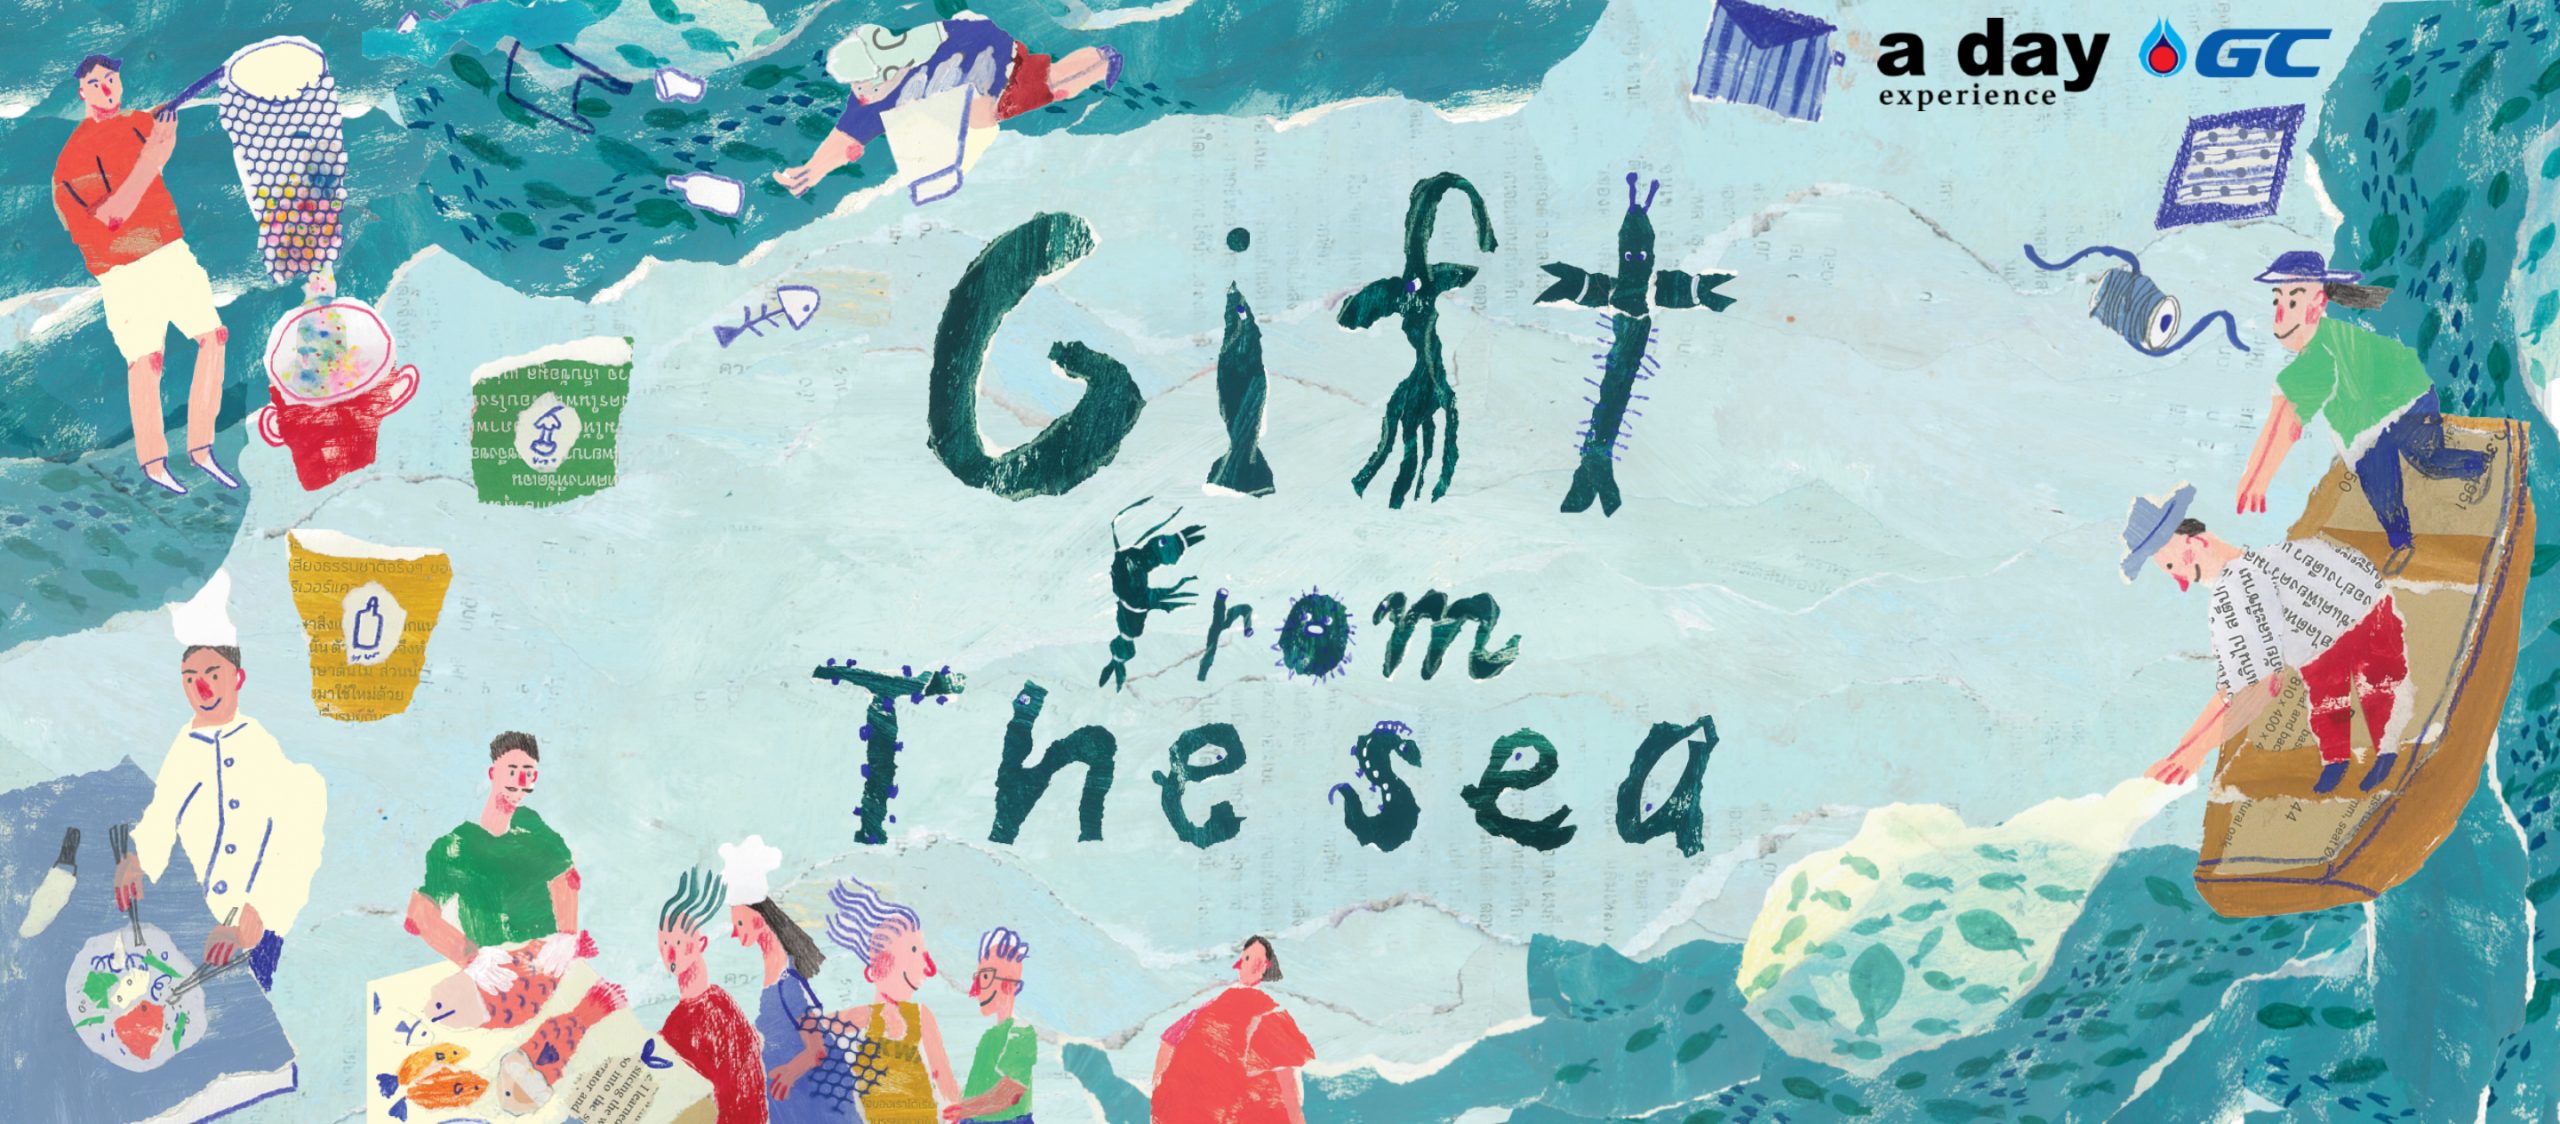 รับสมัครผู้ร่วมทริป a day experience : Gift from the Sea ออกทะเลจะหาขยะมาฝาก